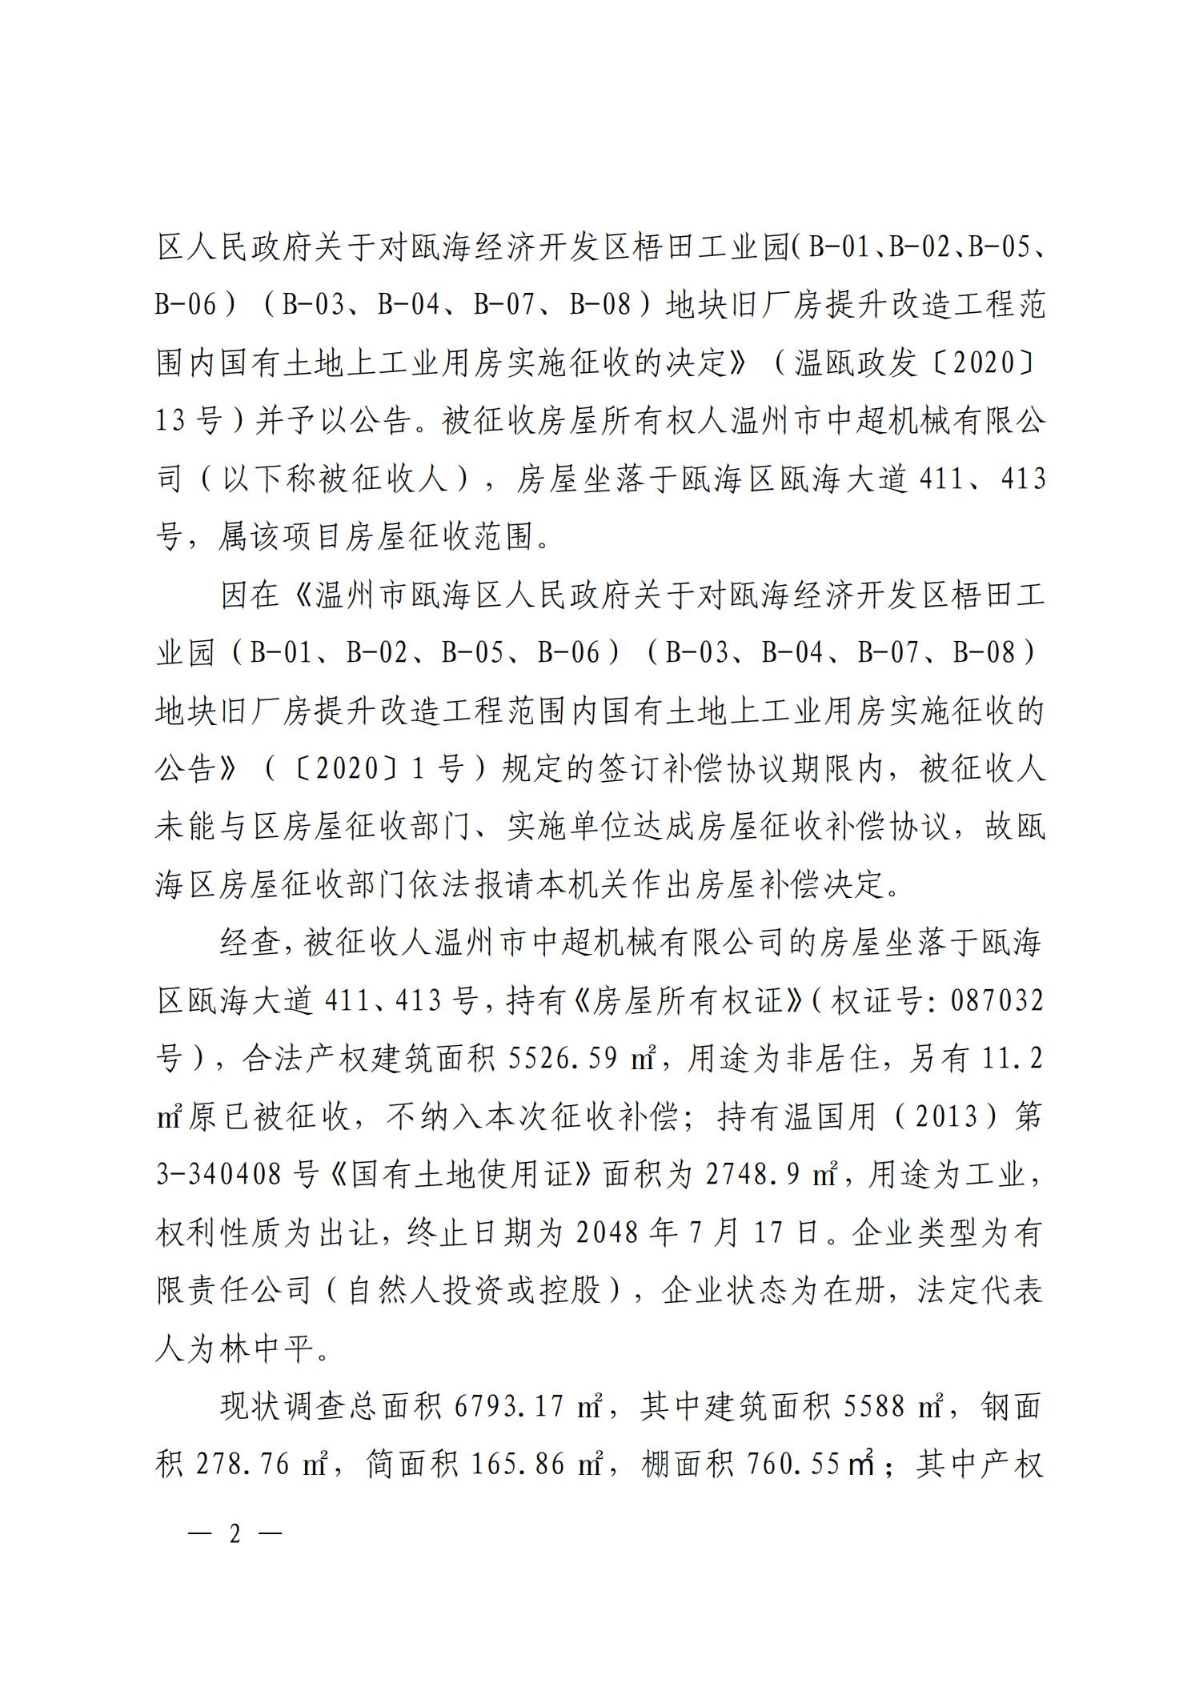 关于对温州市中超机械有限公司房屋的补偿决定(1)(1)_01.jpg